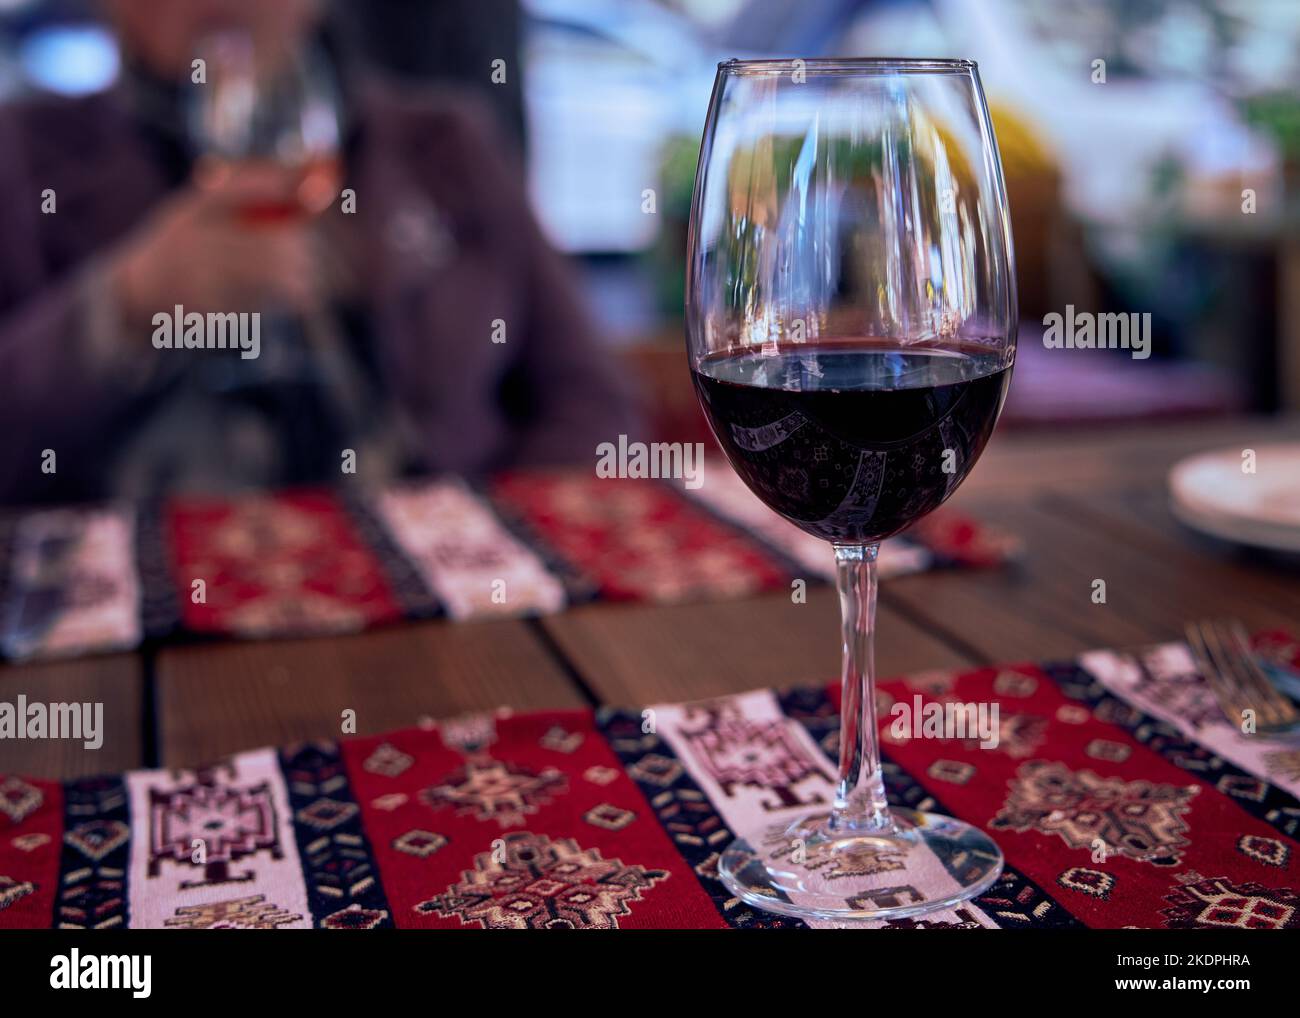 Ein Glas Rotwein auf einem Restauranttisch mit Serviettenreflexen im Glas. Tischunterlage in einem Restaurant mit krimtatarischer Küche Stockfoto